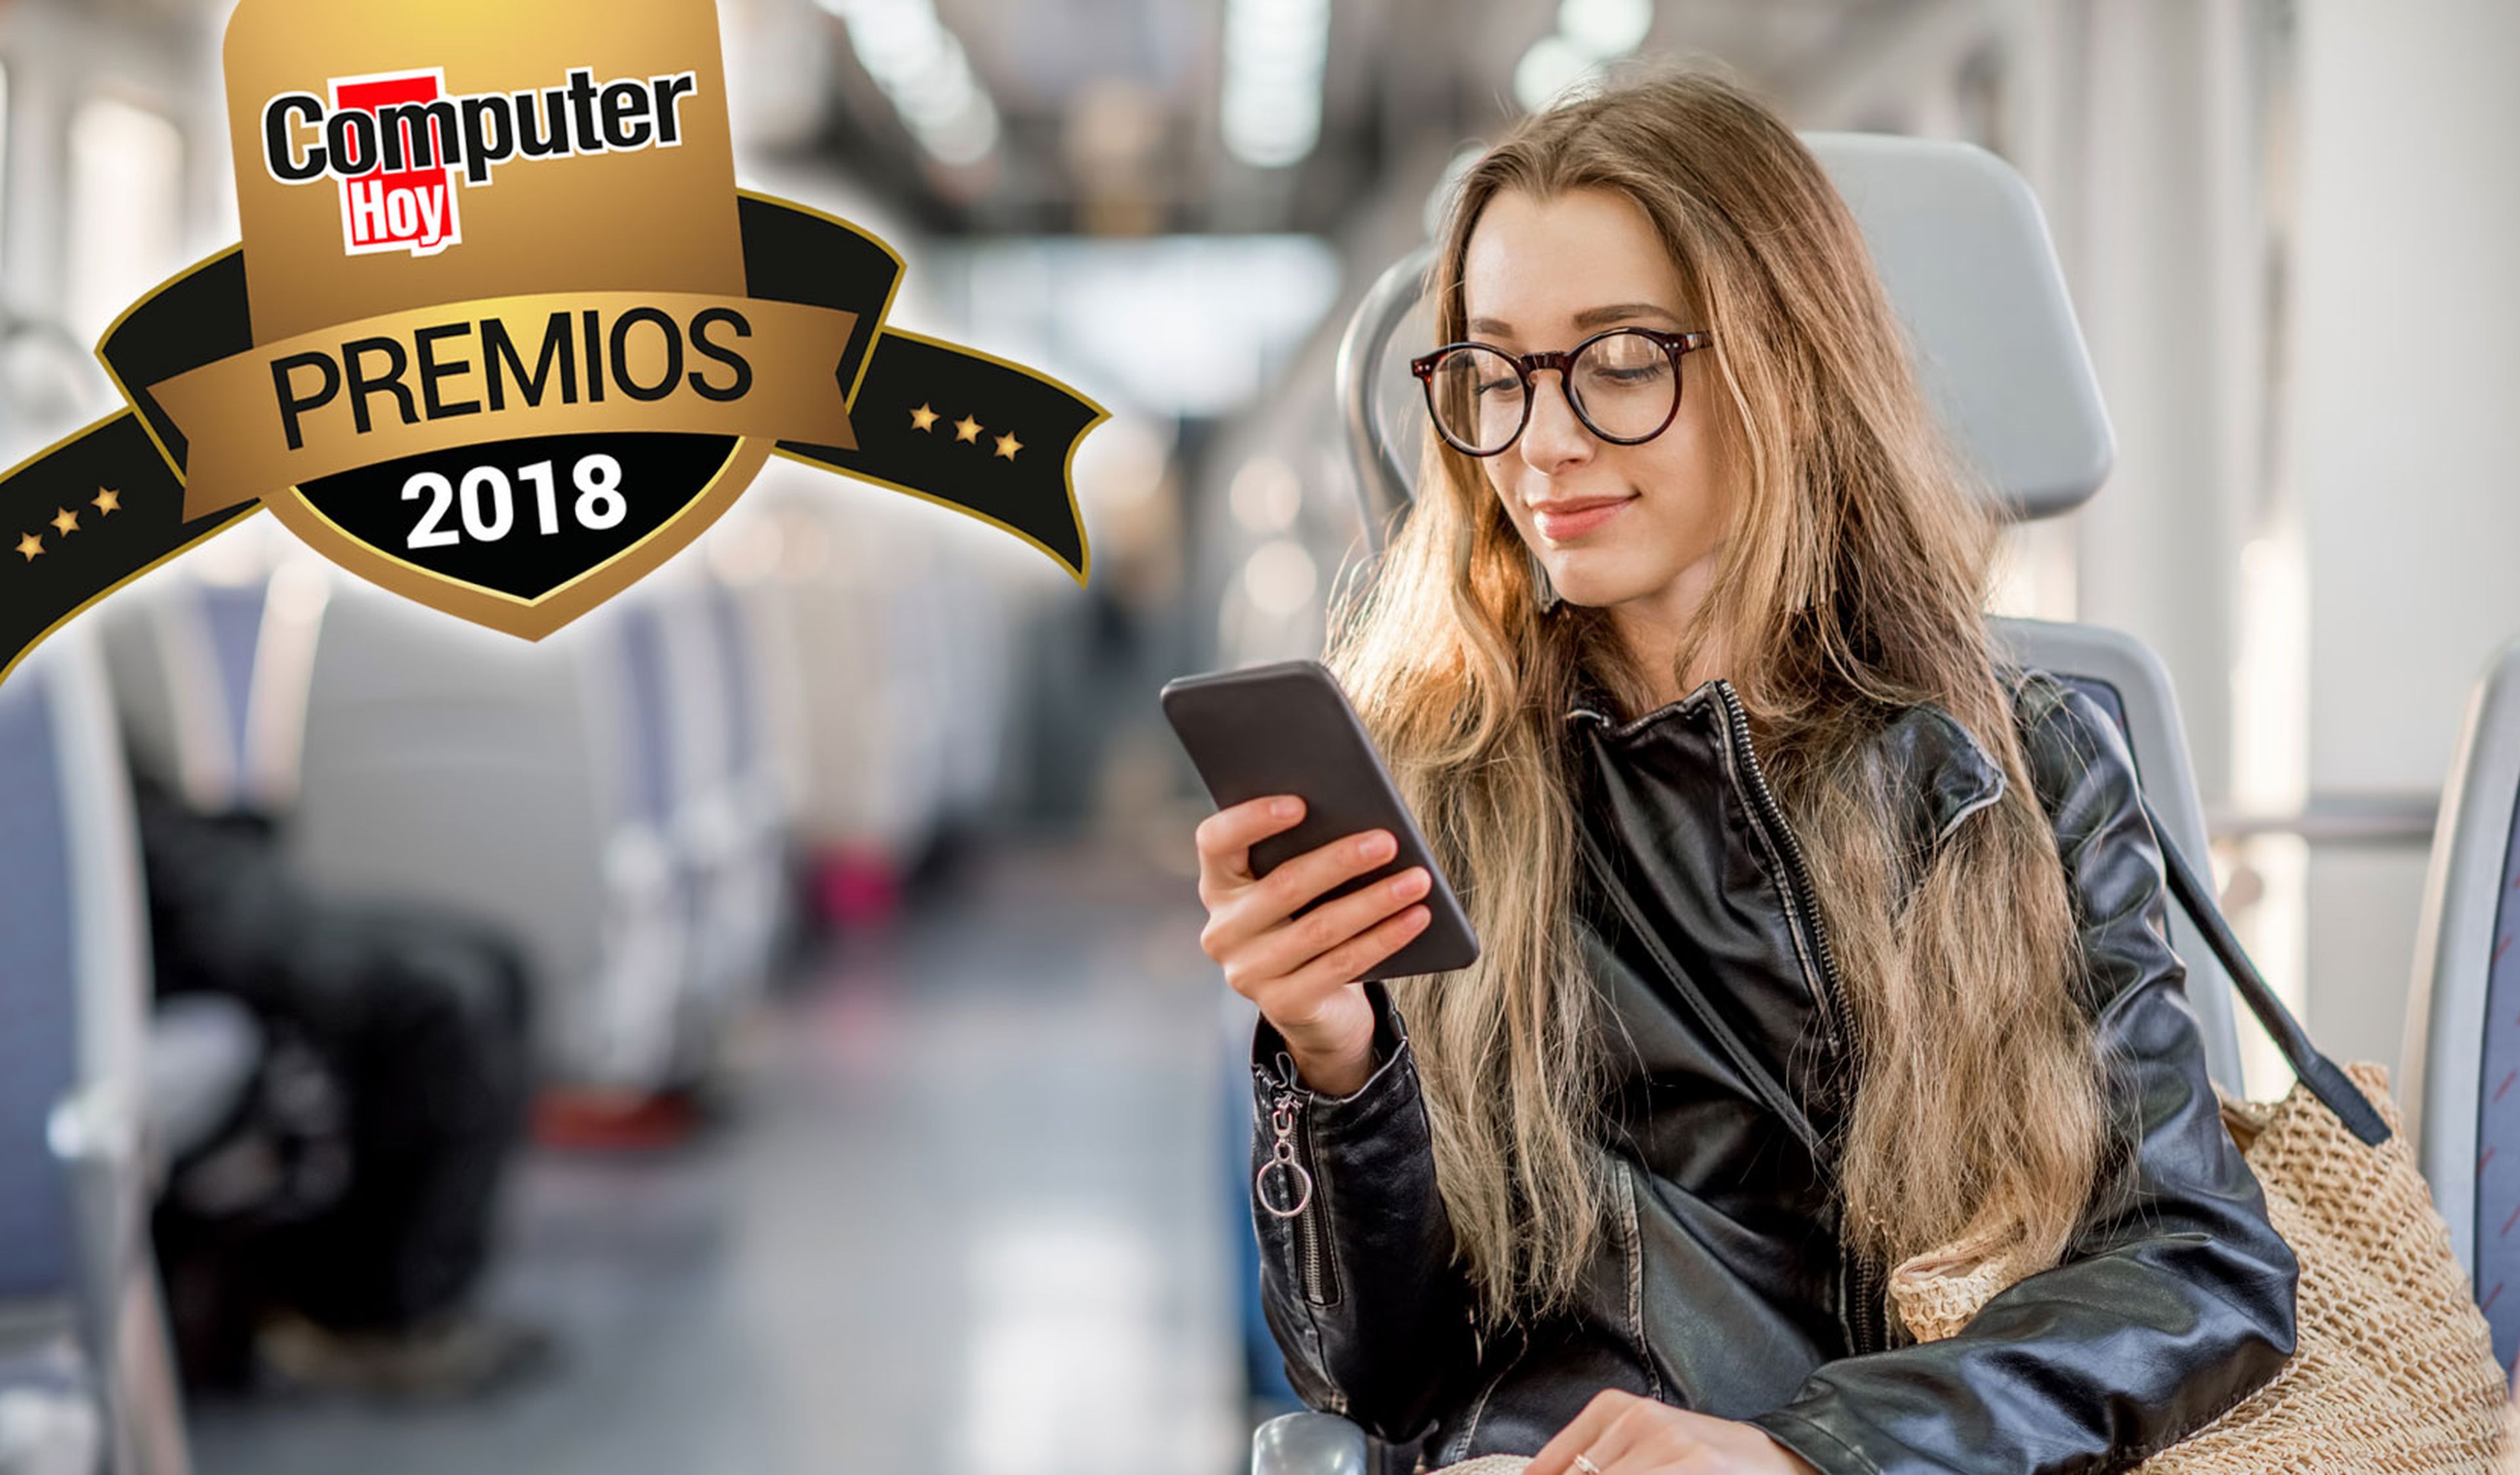 Premios ComputerHoy 2018 smartphone gama entrada